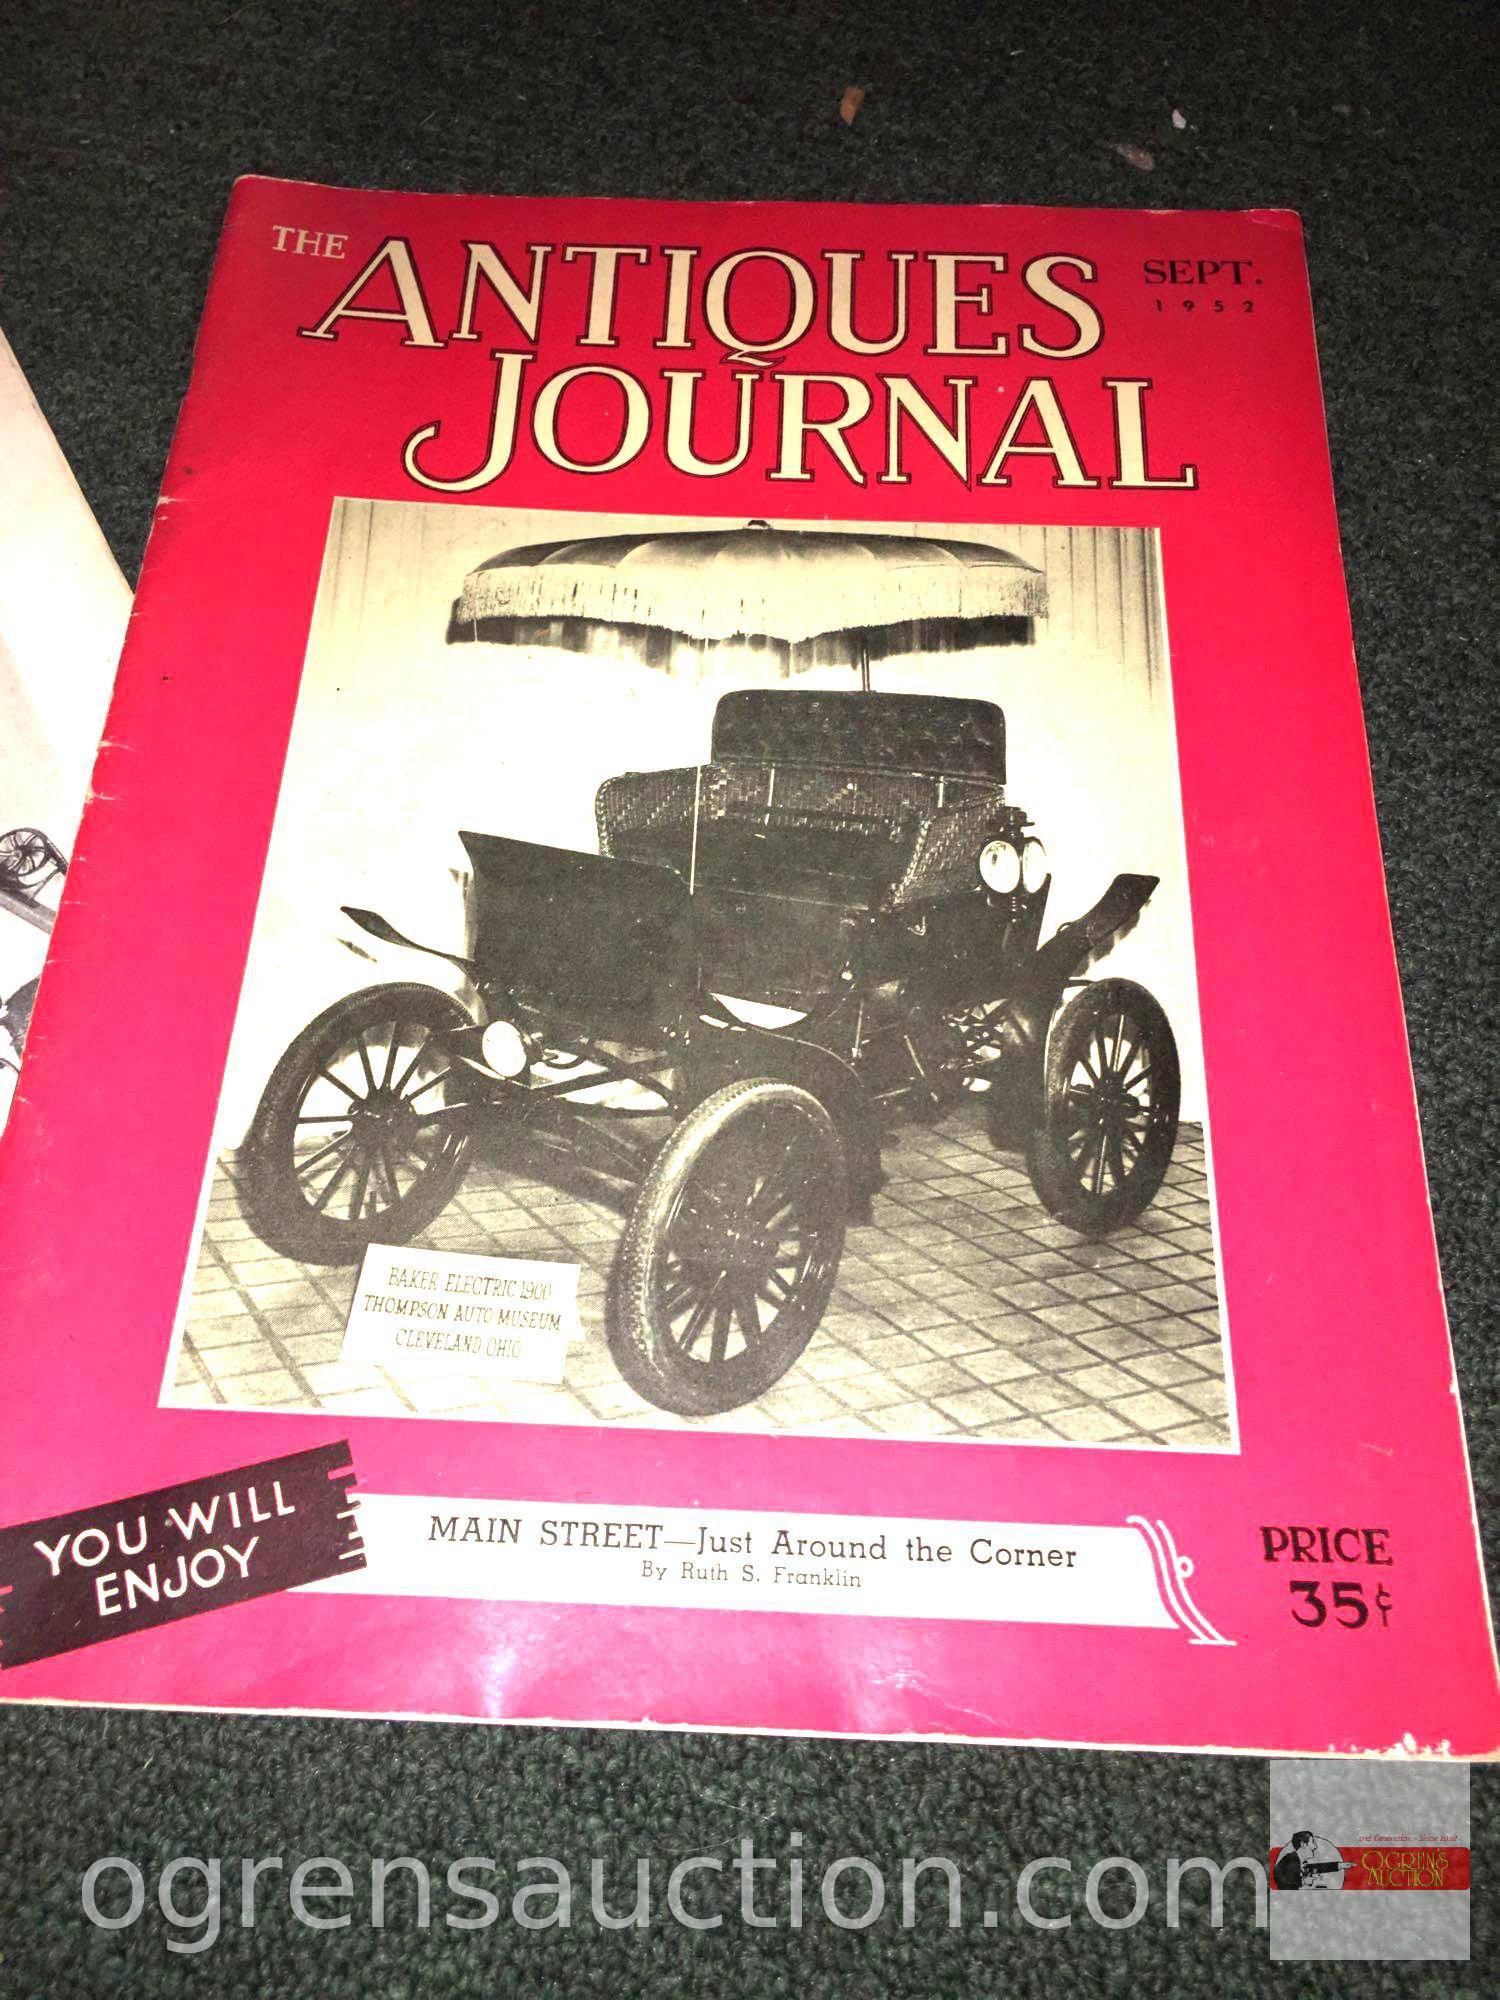 Books - 4 catalogs - 2-1950 Hobbies, 1955 Wholesale Catalog & 1952 Antique Journal